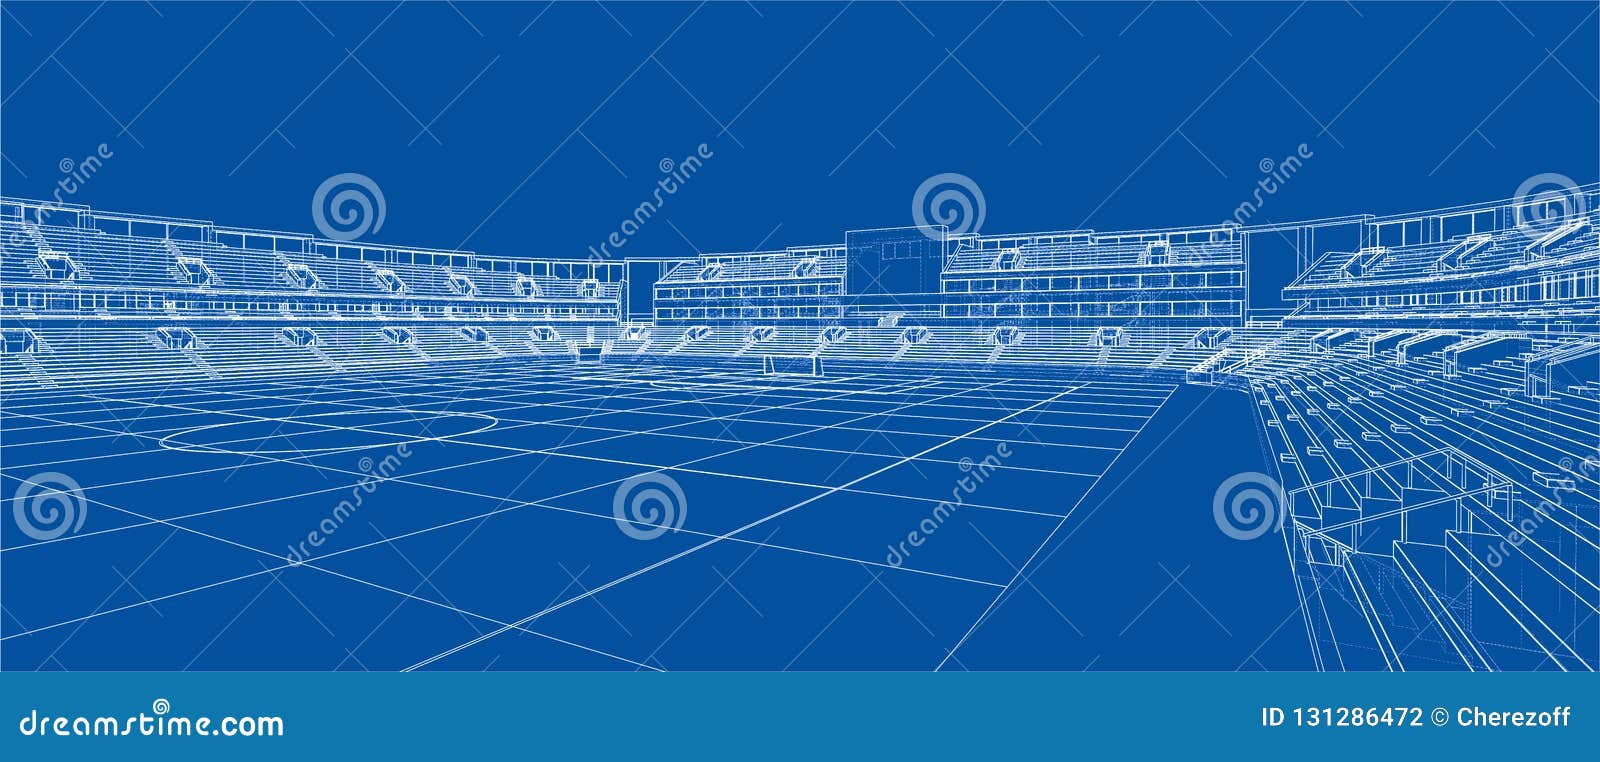 Sketch Of Football Stadium Stock Vector Illustration Of Black 131286472